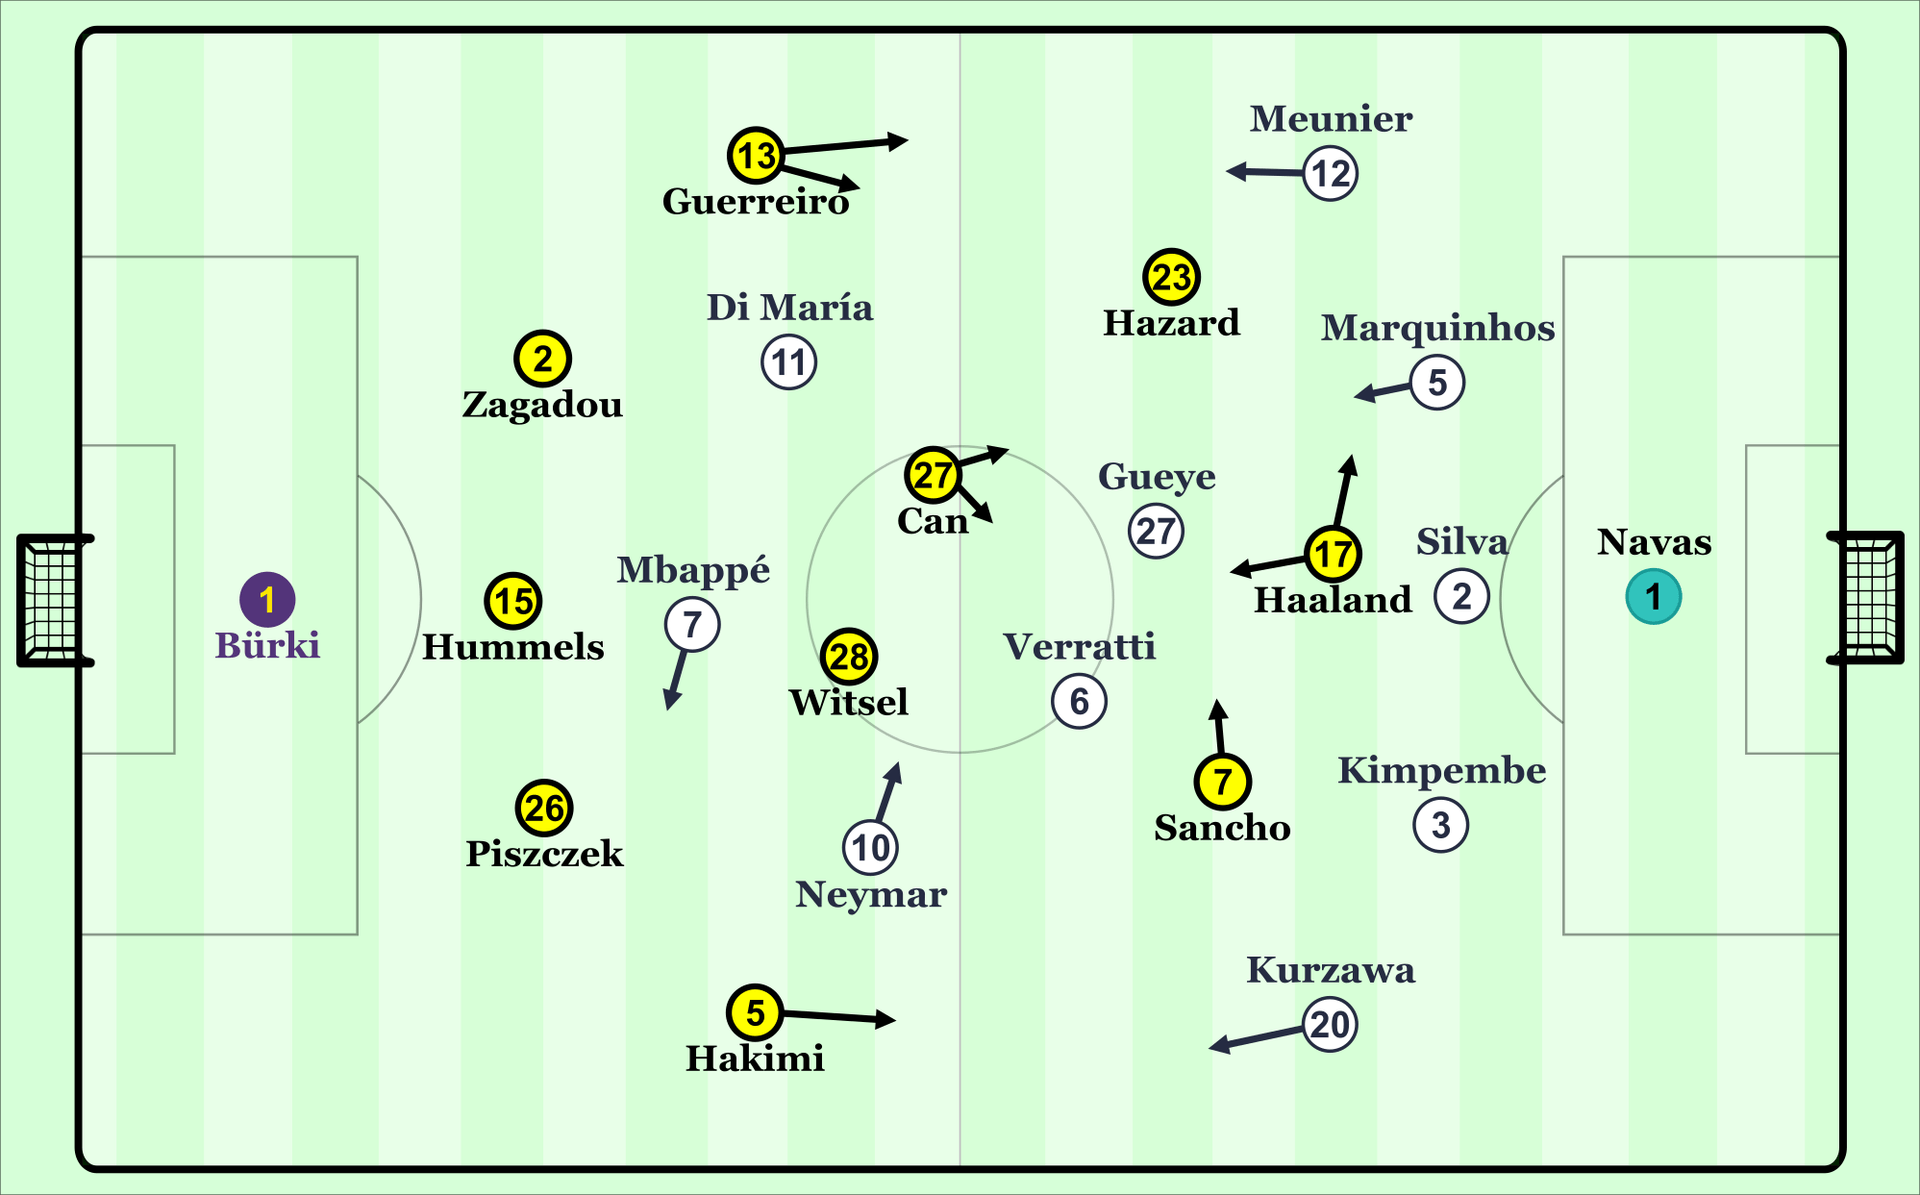 So spielten die Mannschaften: Dortmund gegen PSG.